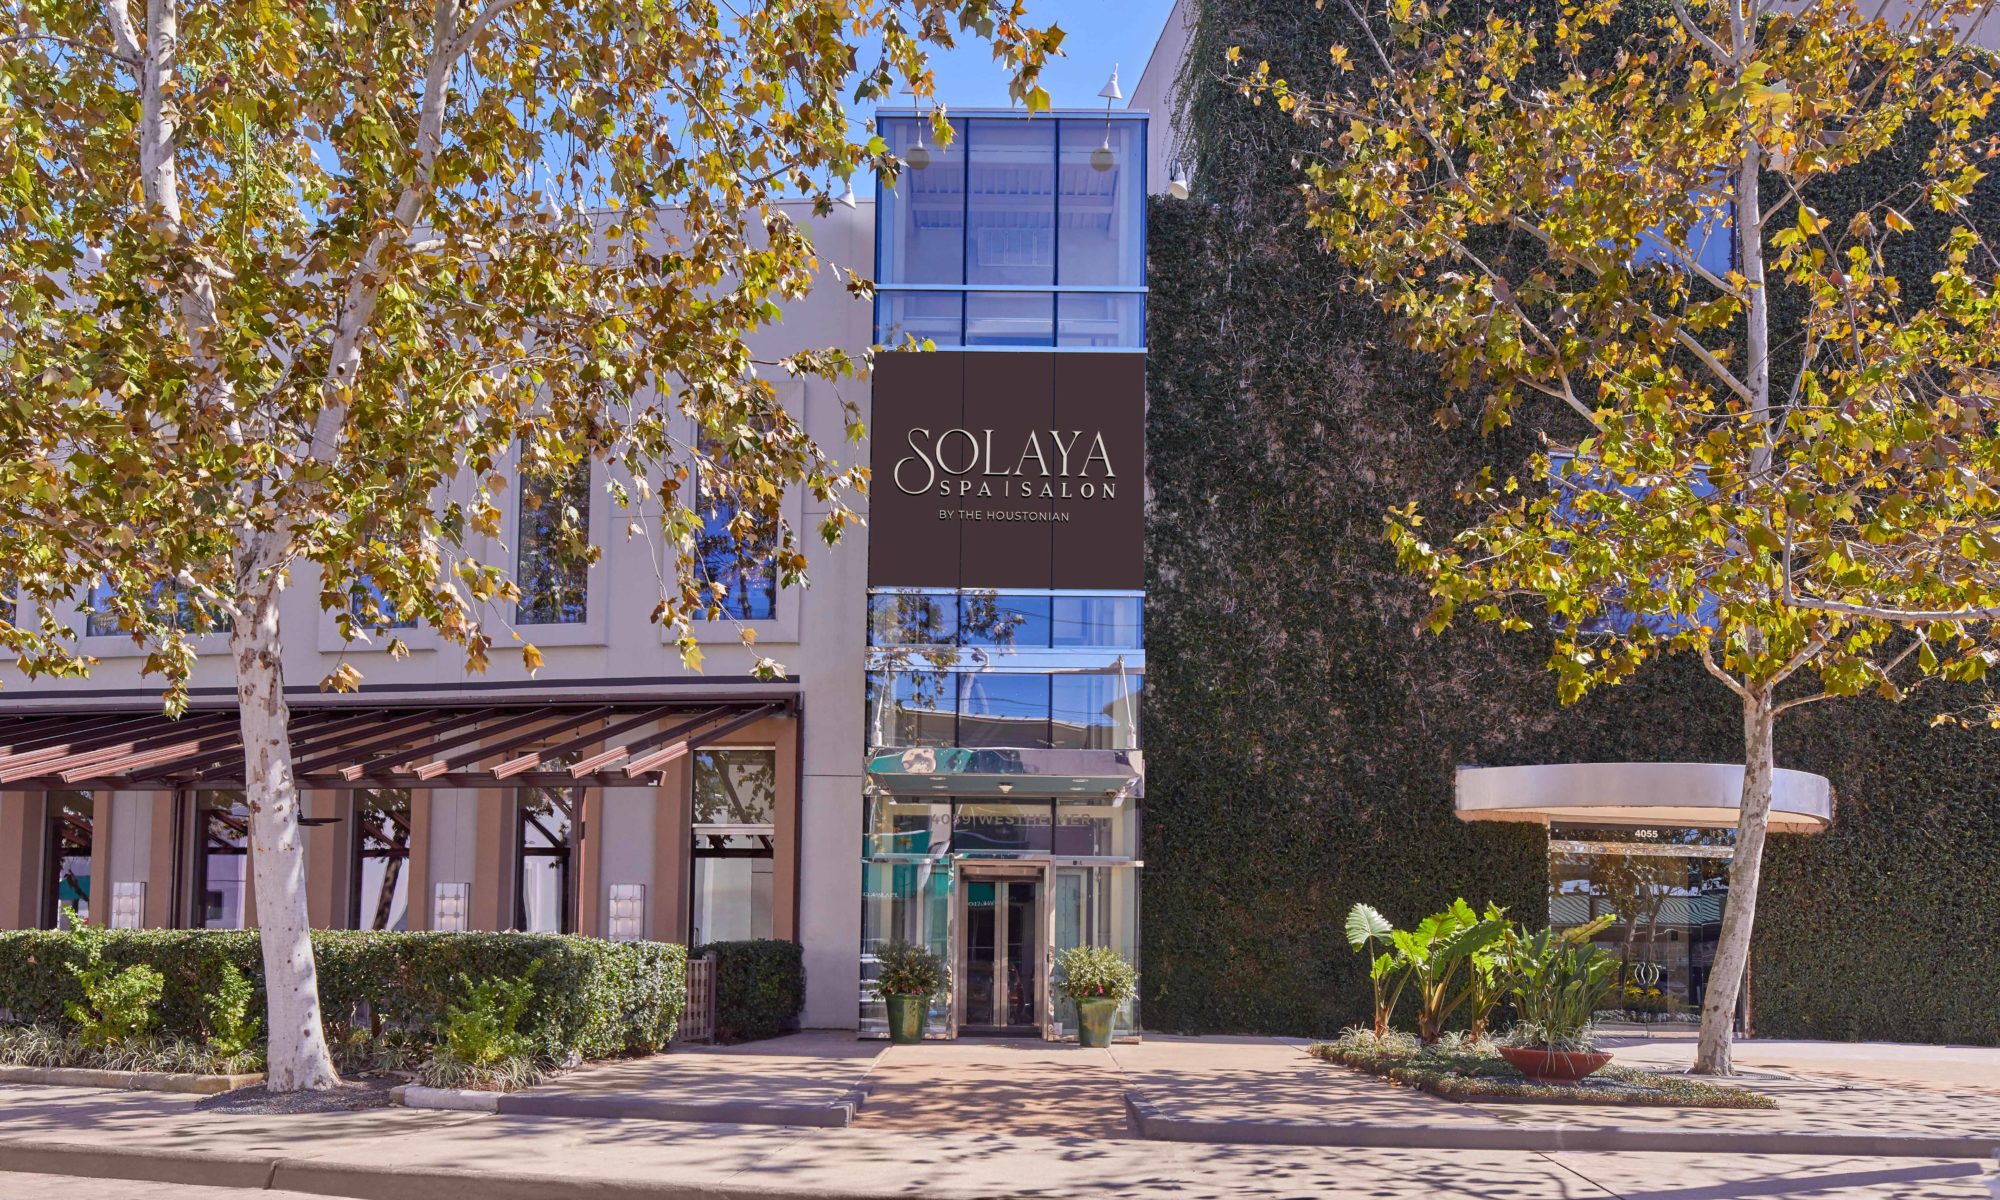 Solaya Spa & Salon